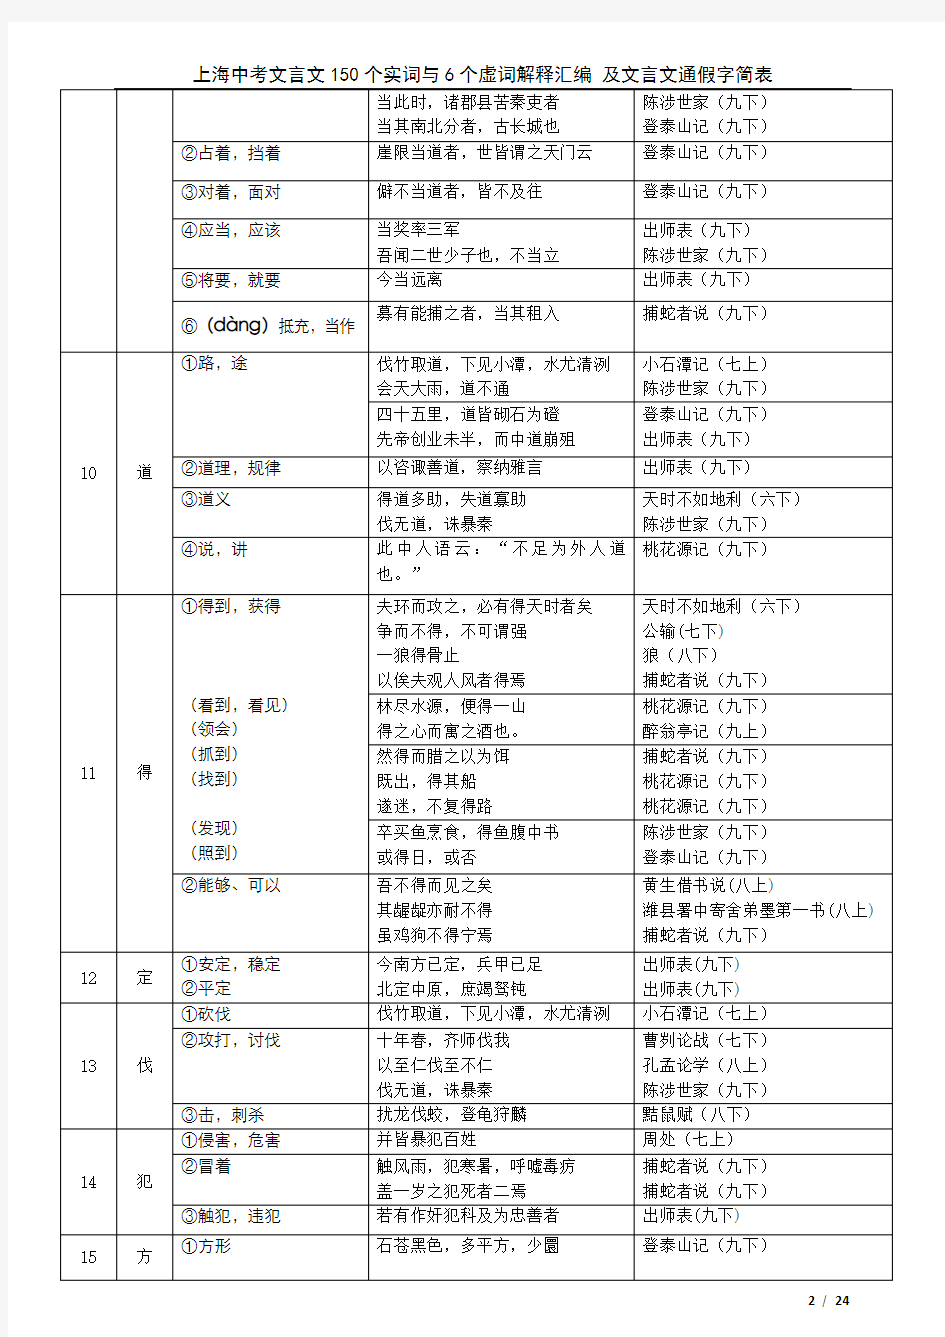 上海中考文言文150个实词6个虚词以及通假字最新201803整理